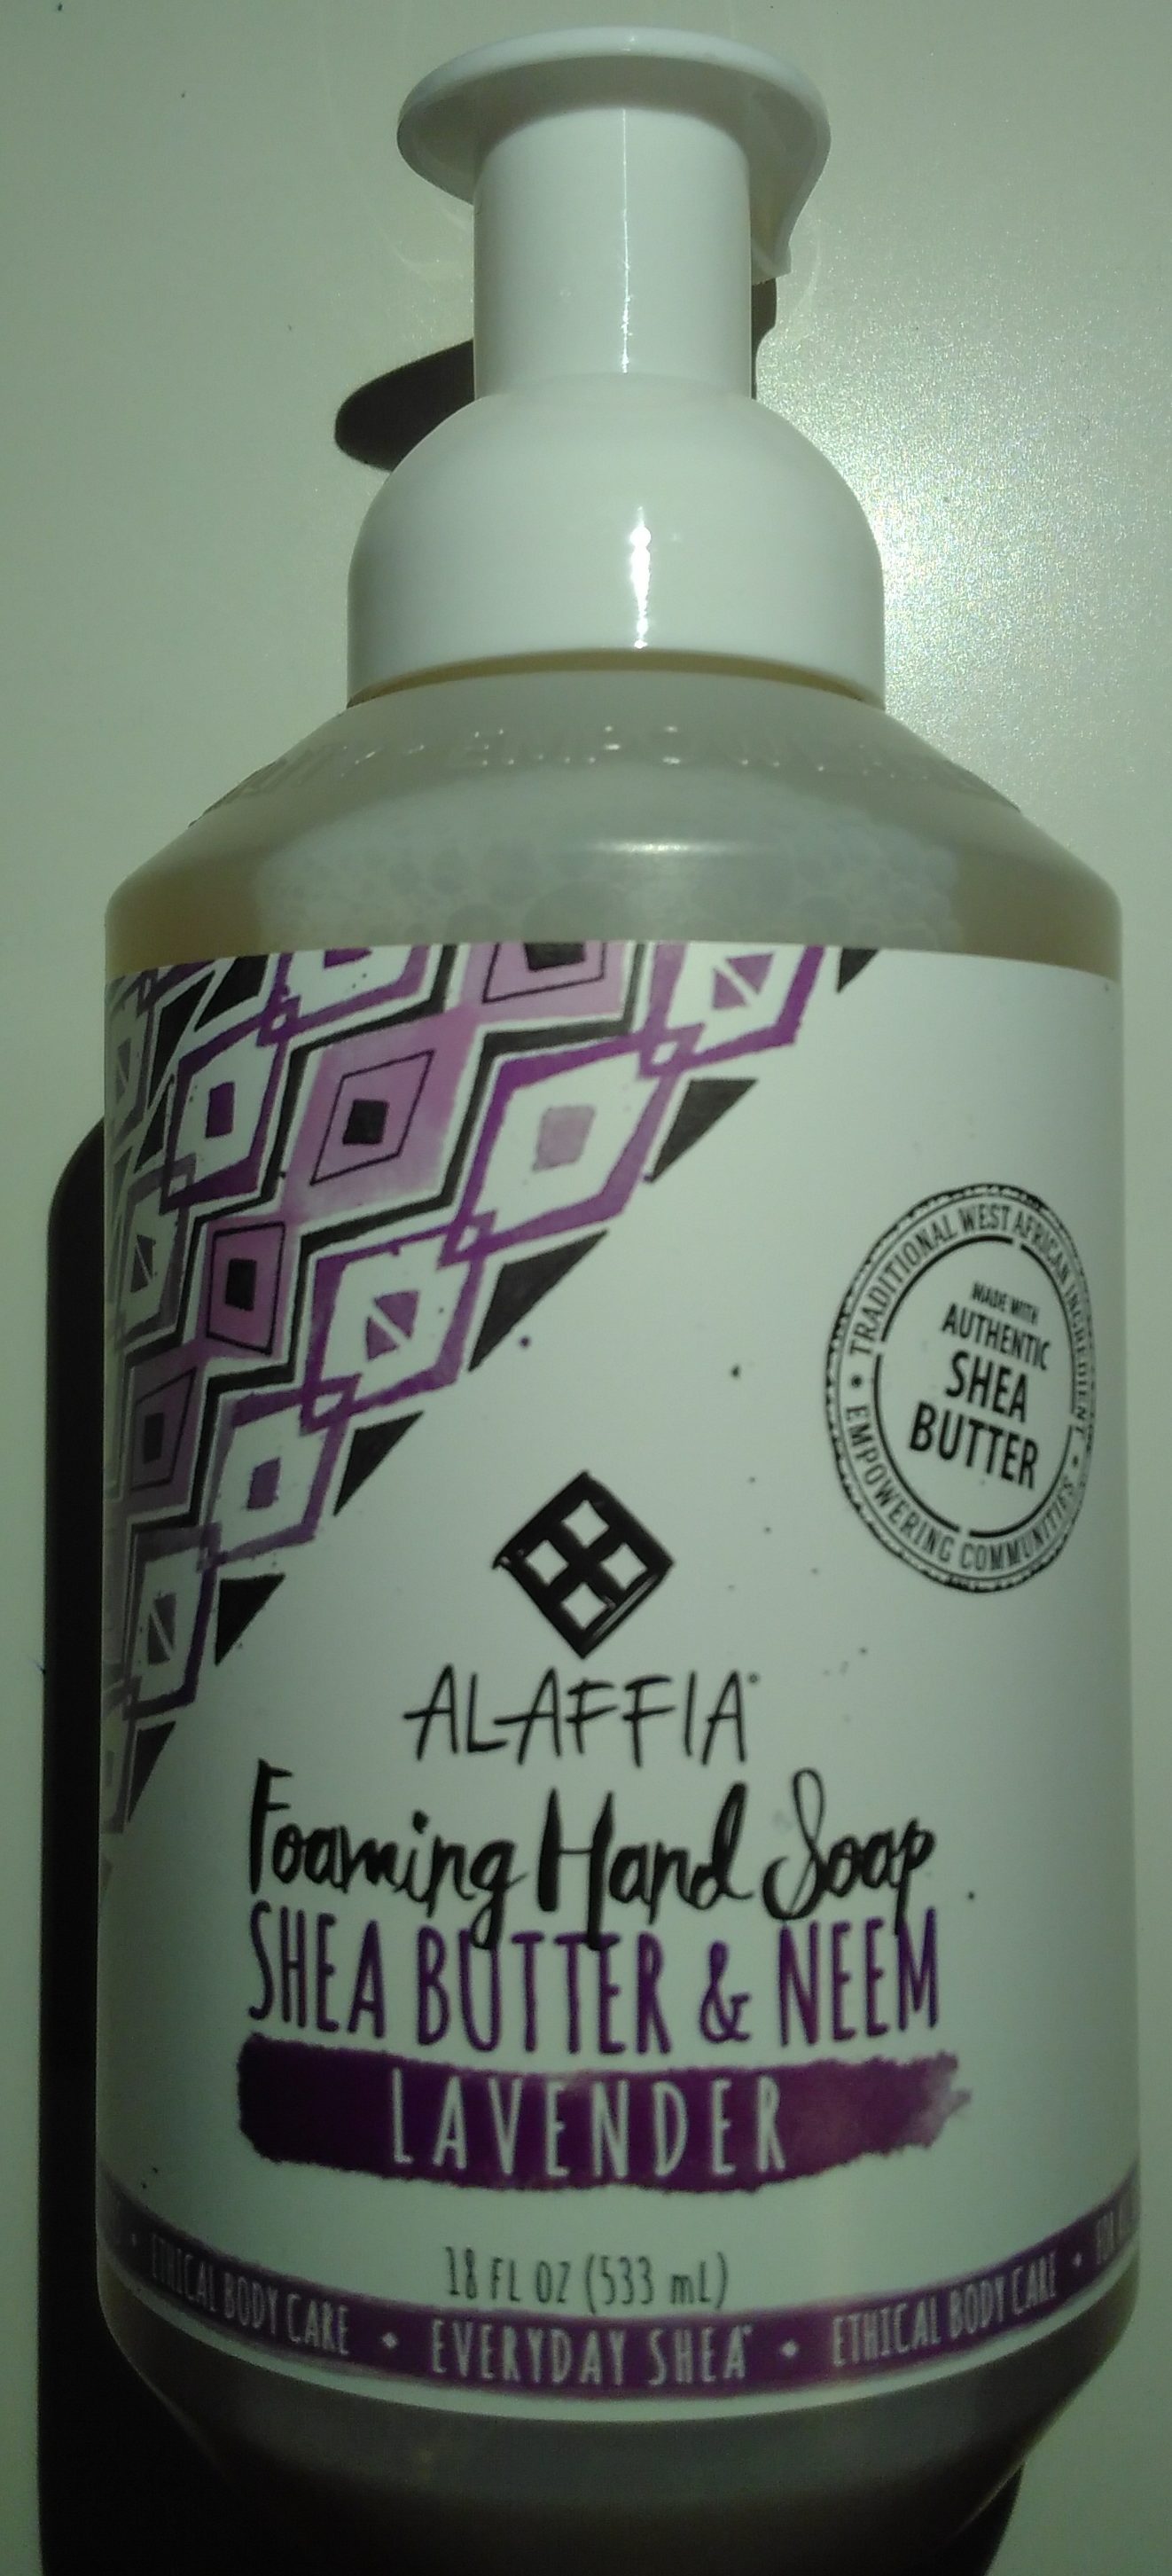 Foaming Hand Soap - Product - en